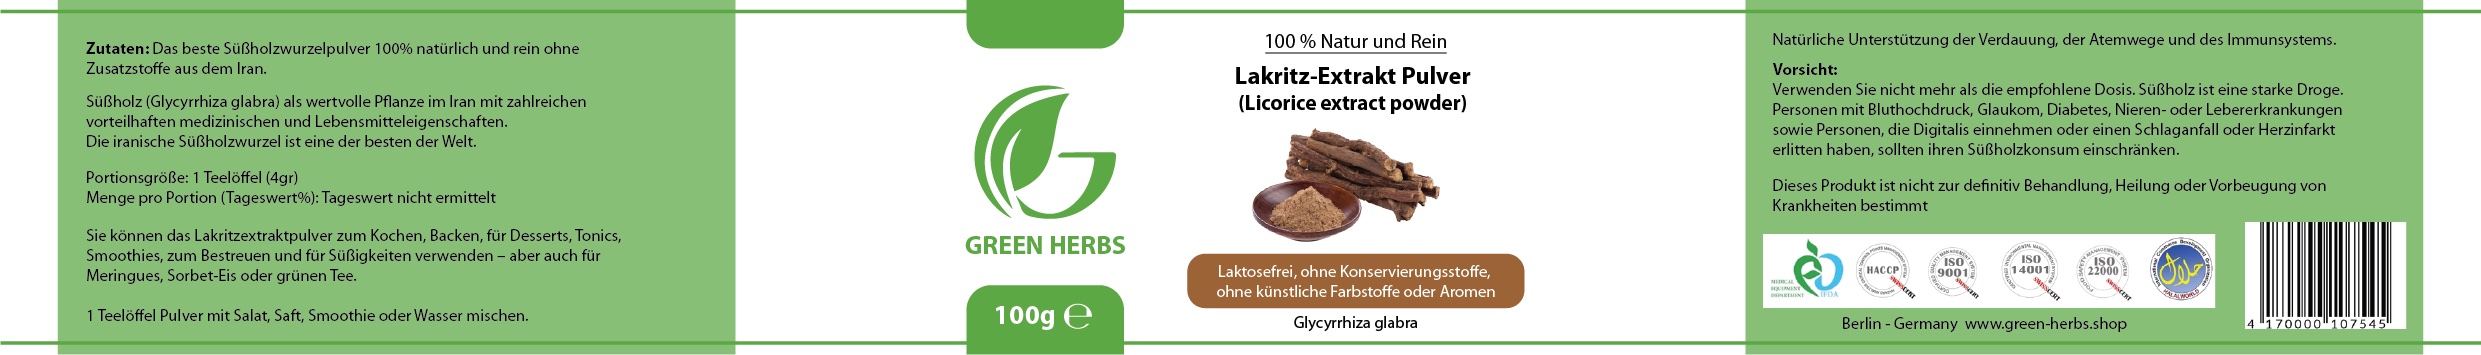 Lakritz-Extrakt Pulver